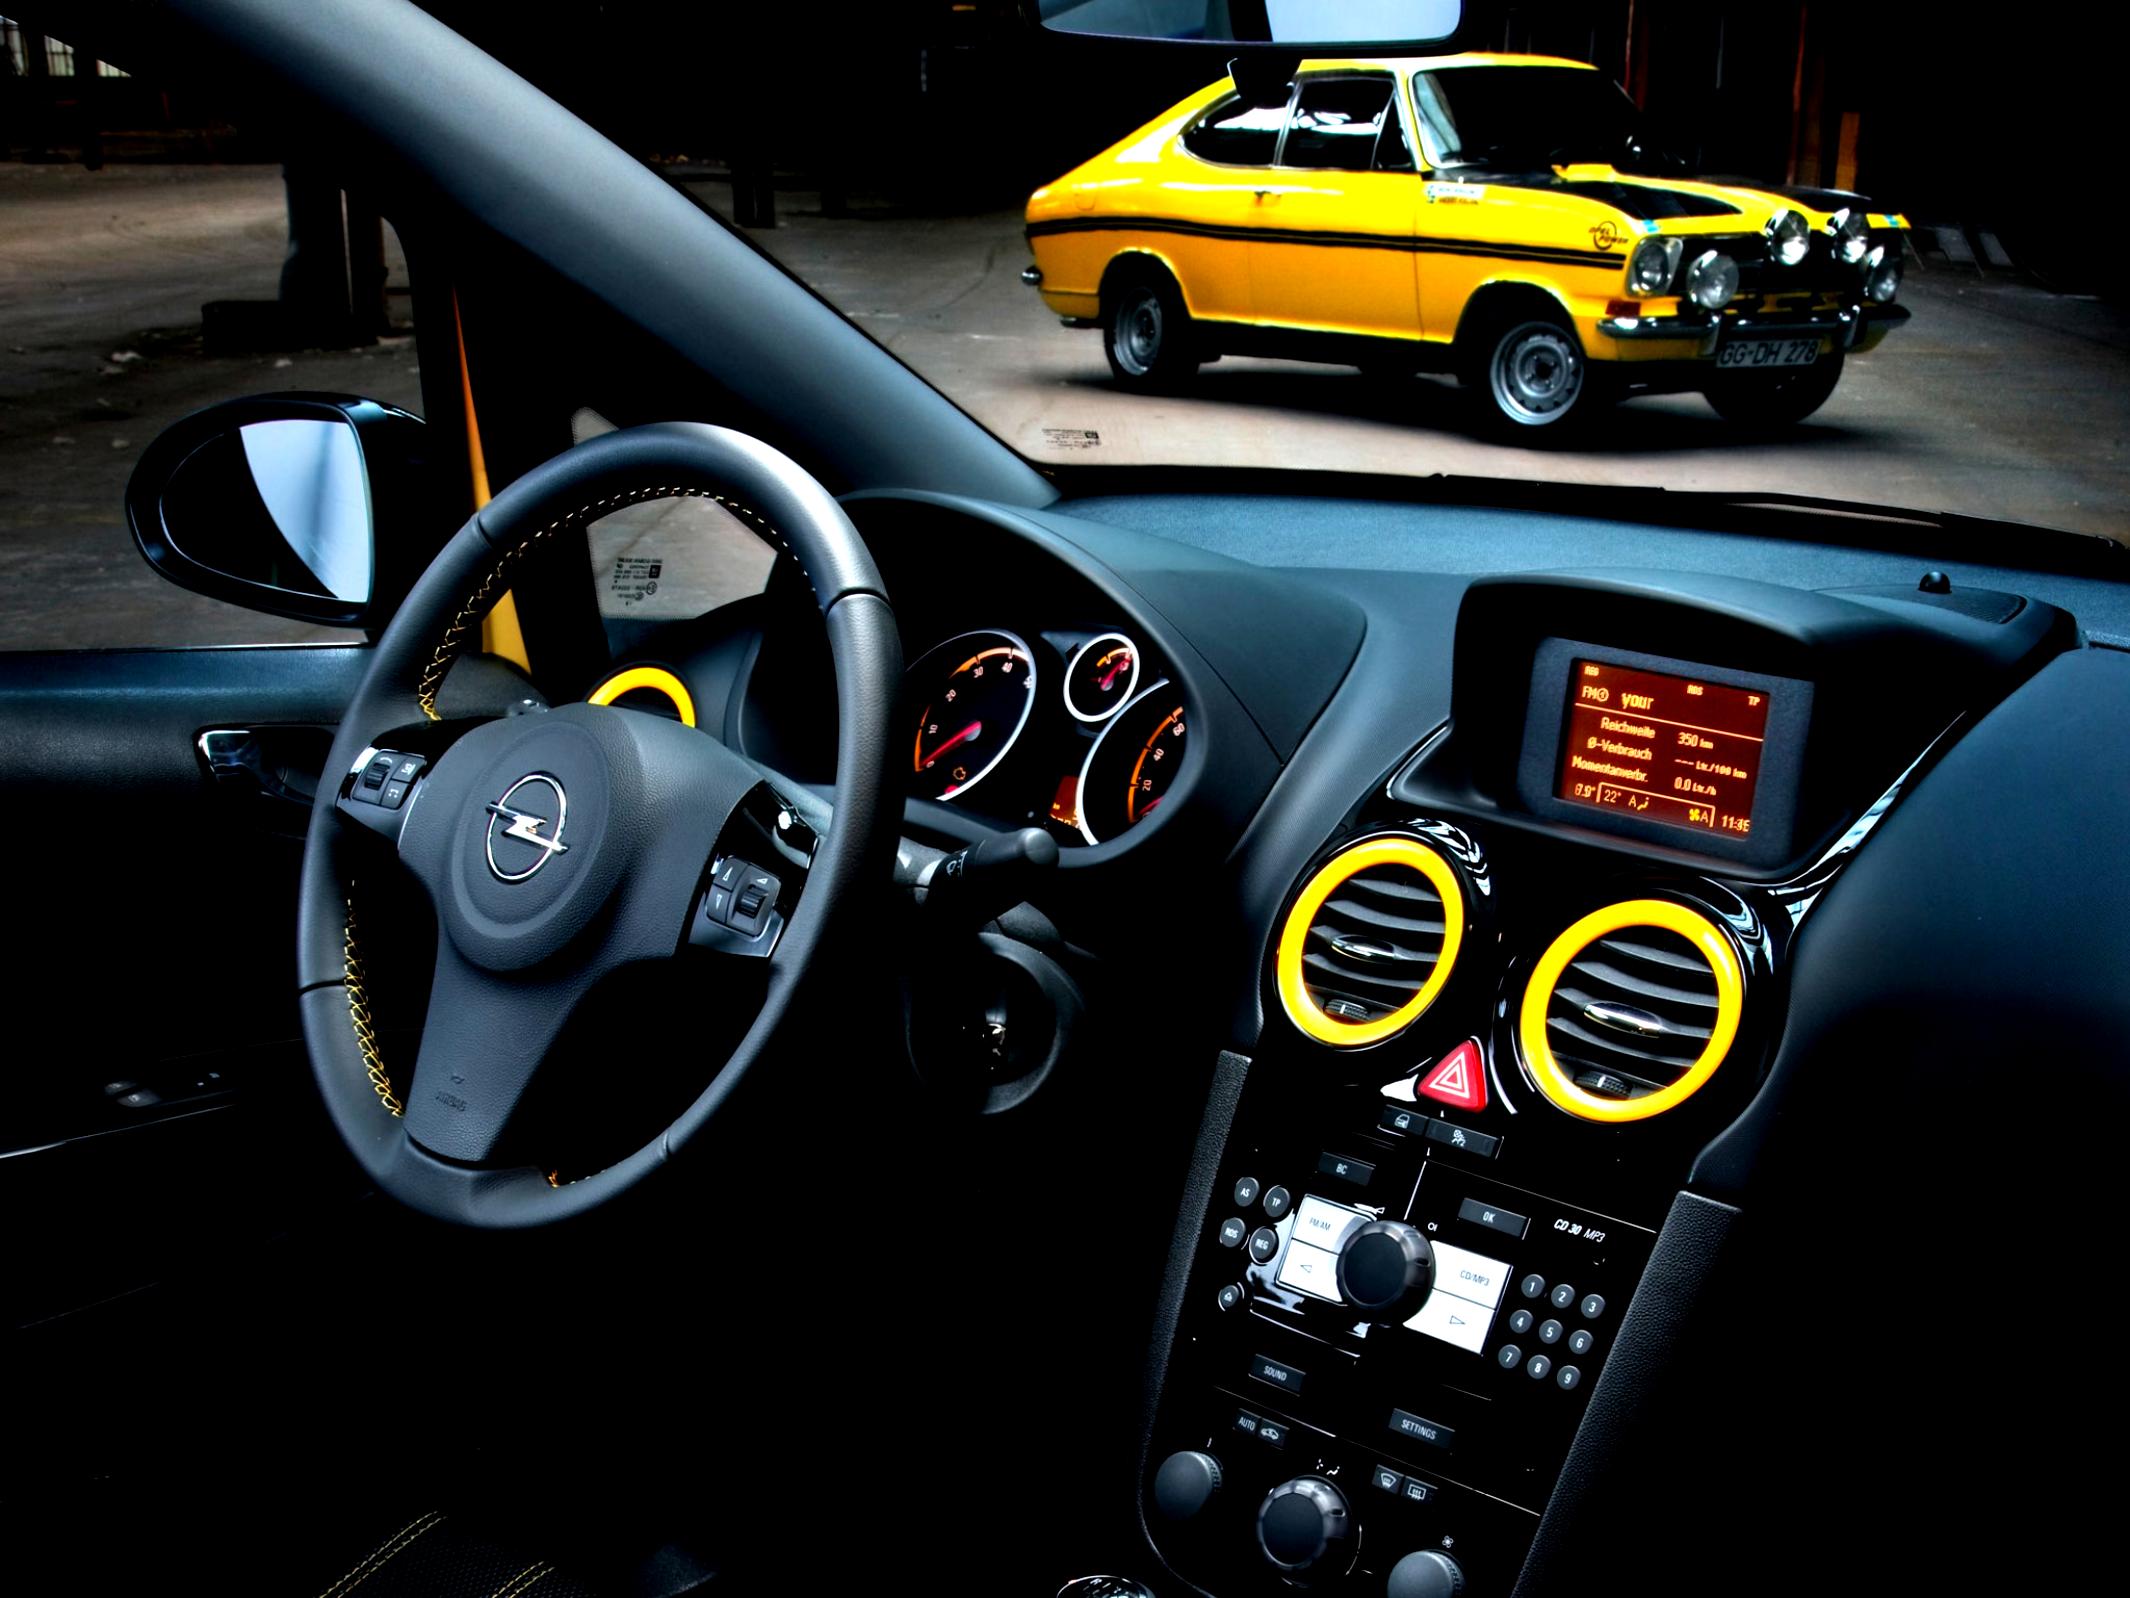 Opel Corsa 3 Doors 2010 #46